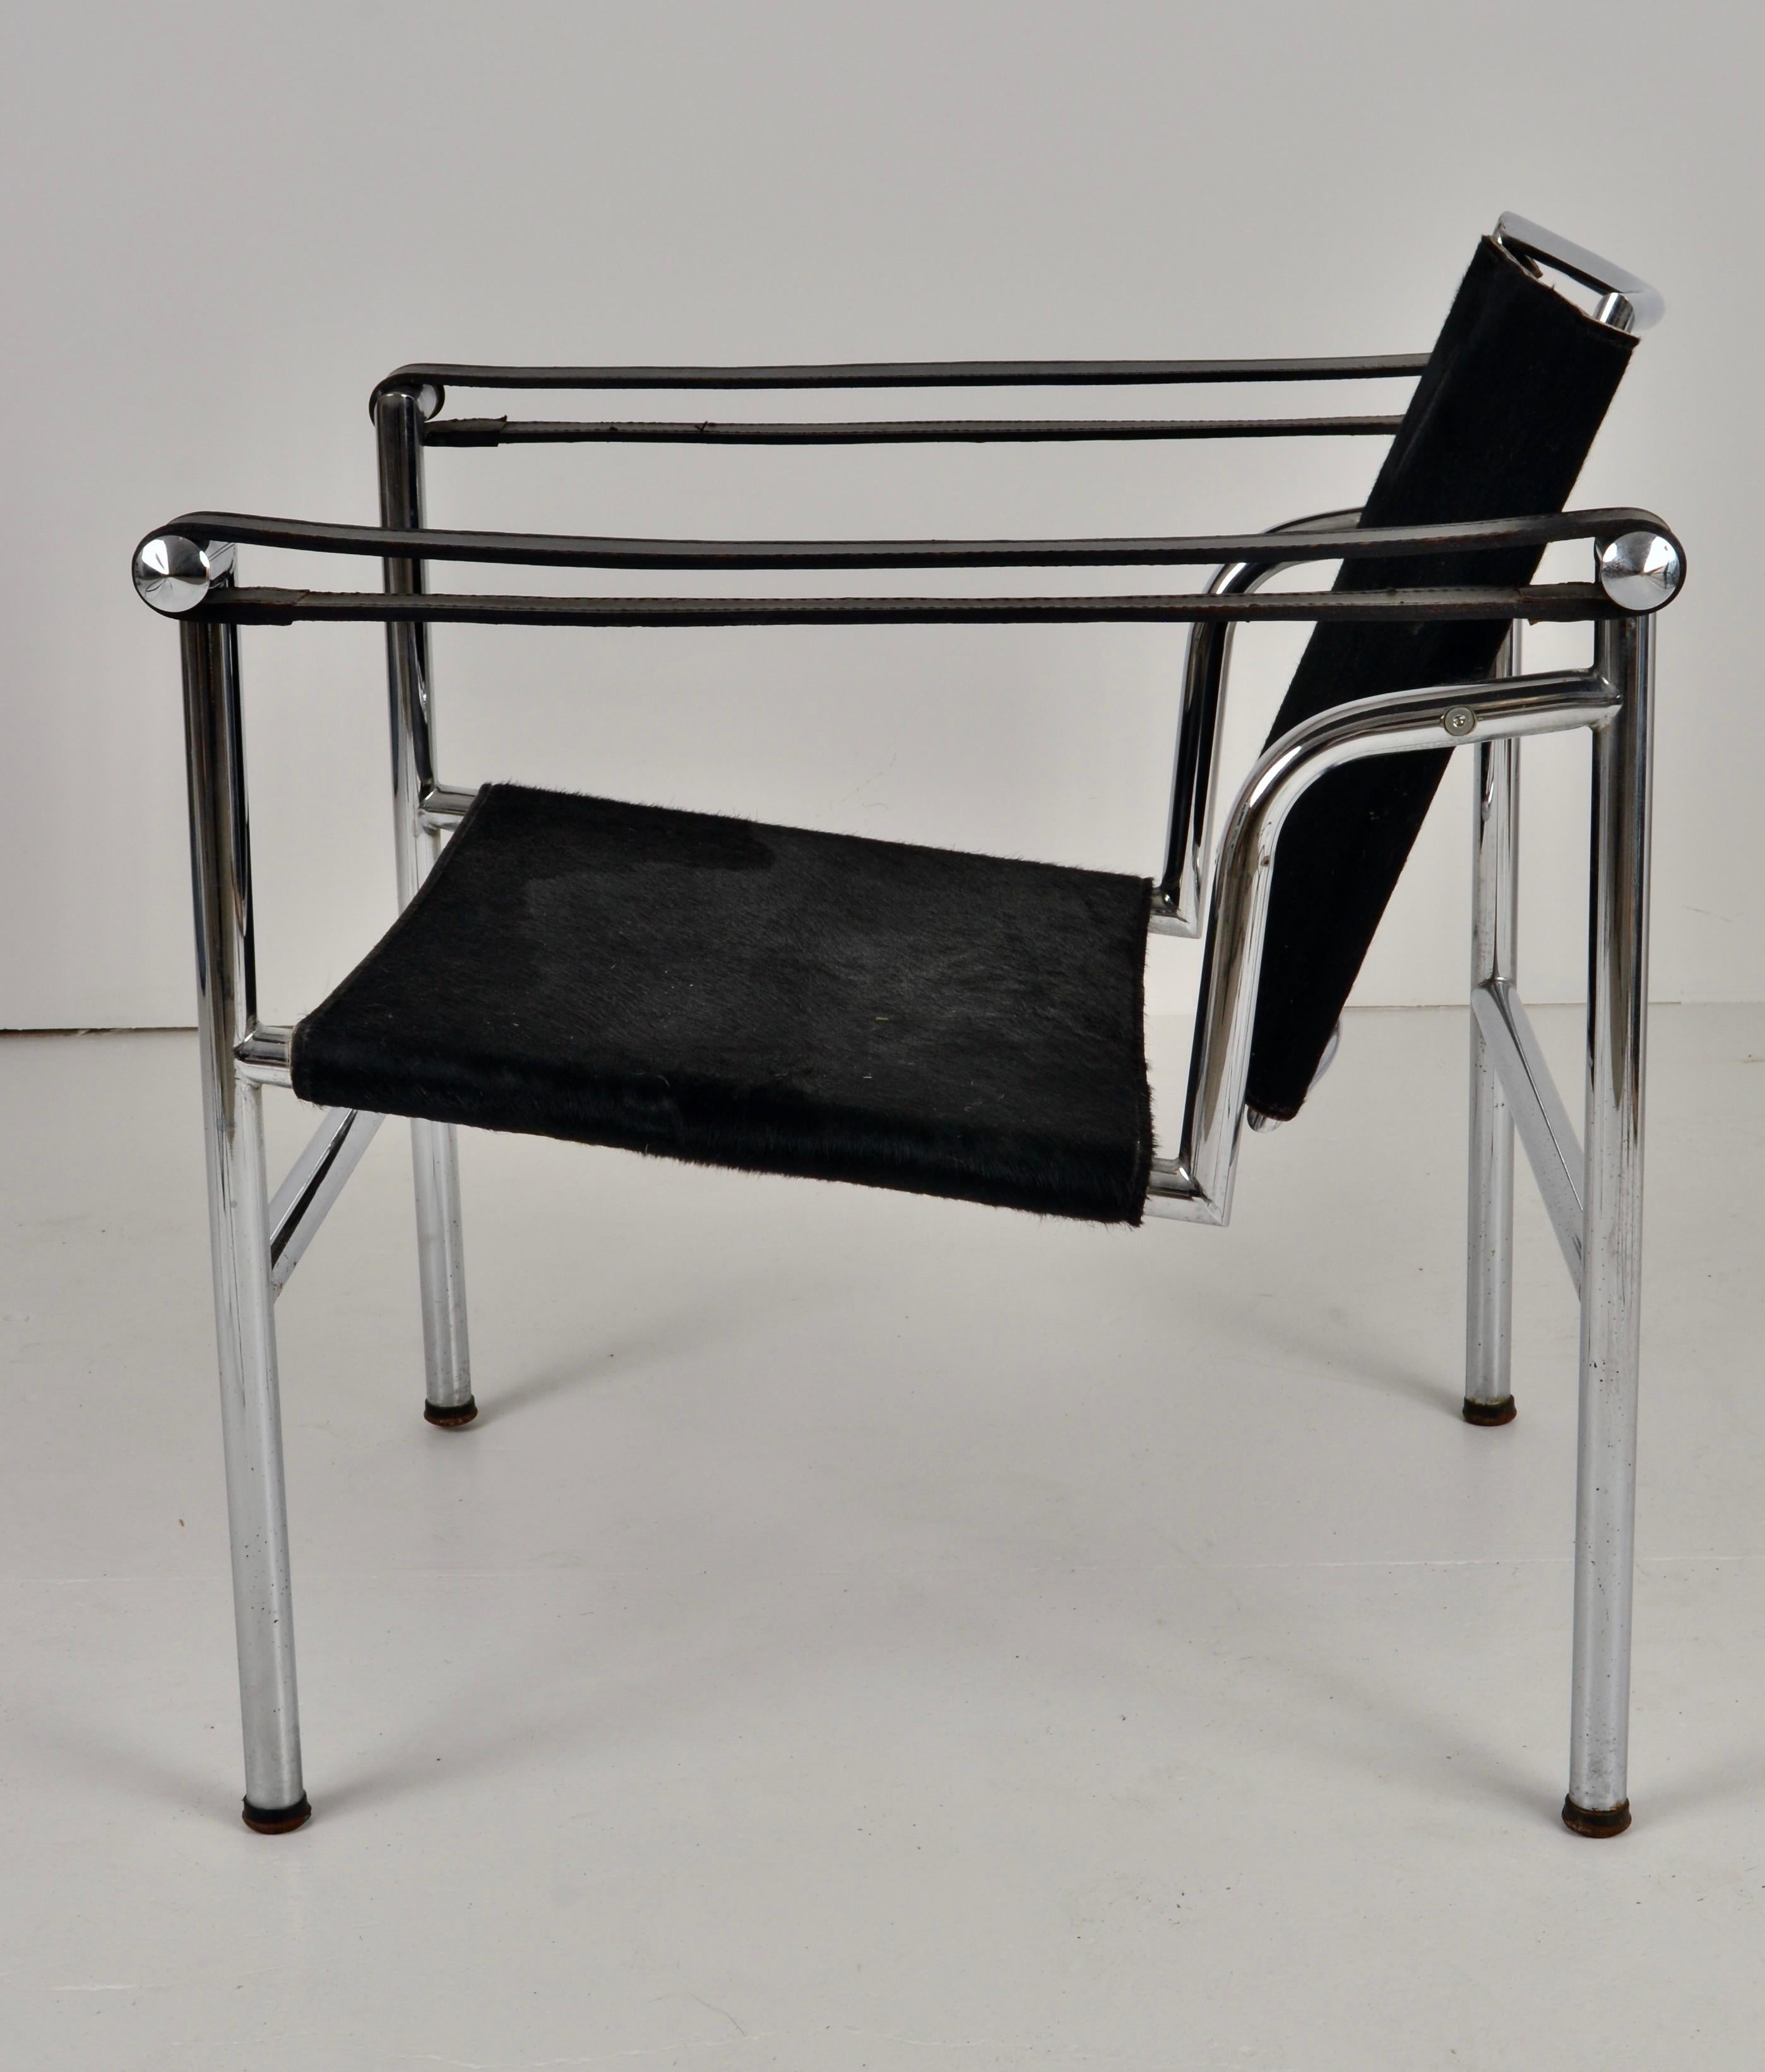 Der LC1-Stuhl ist eine Ikone des modernen Designs, die funktionalen Komfort mit einer außergewöhnlichen Ästhetik verbindet. Das Gestell besteht aus Stahlrohr, und dieses Exemplar ist mit schwarzem Haar auf Rindsleder an Sitzfläche und Rückenlehne